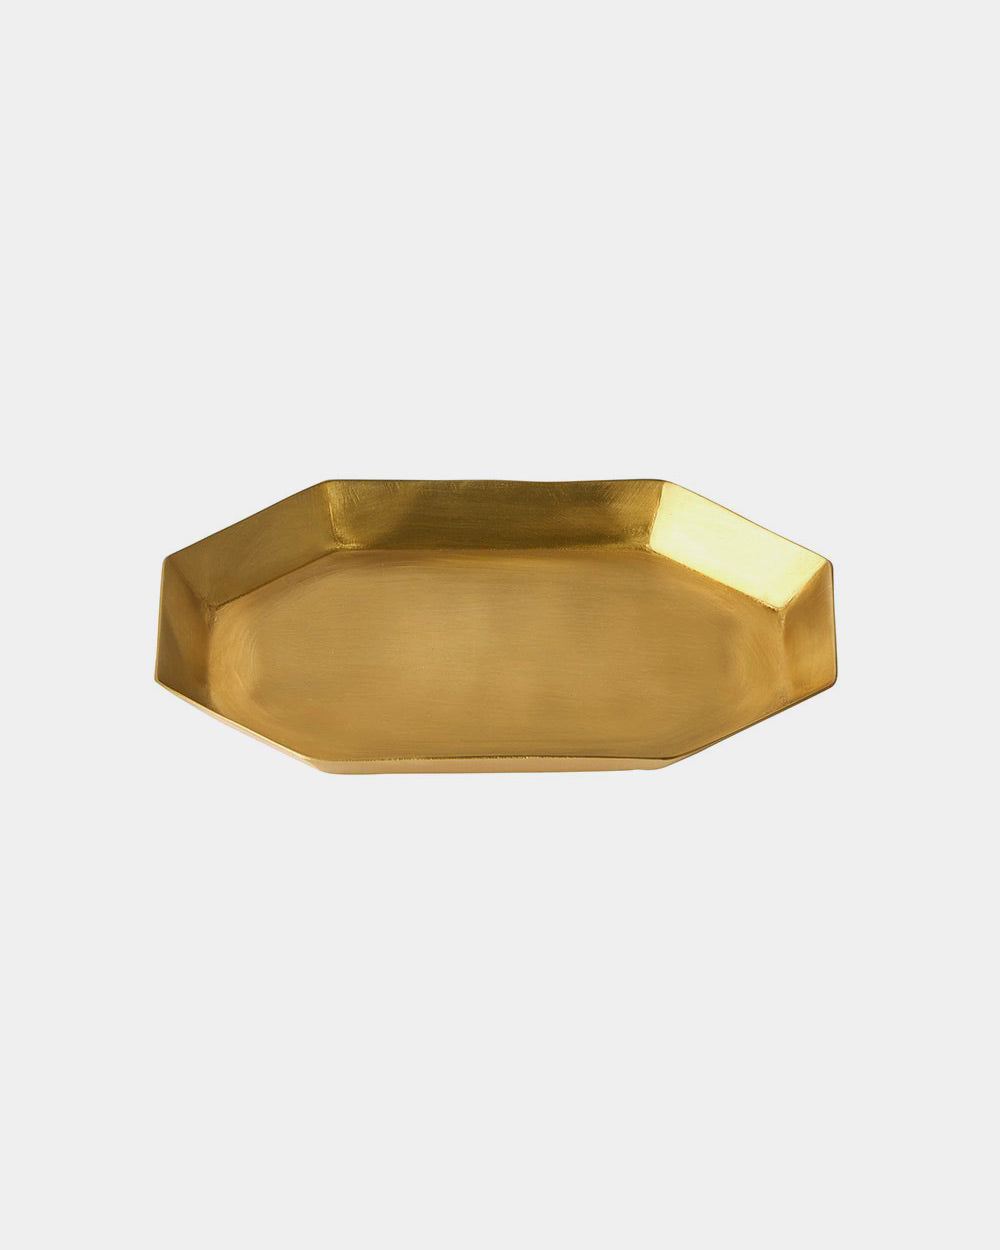 Brass Plate Long Octagonal: Small